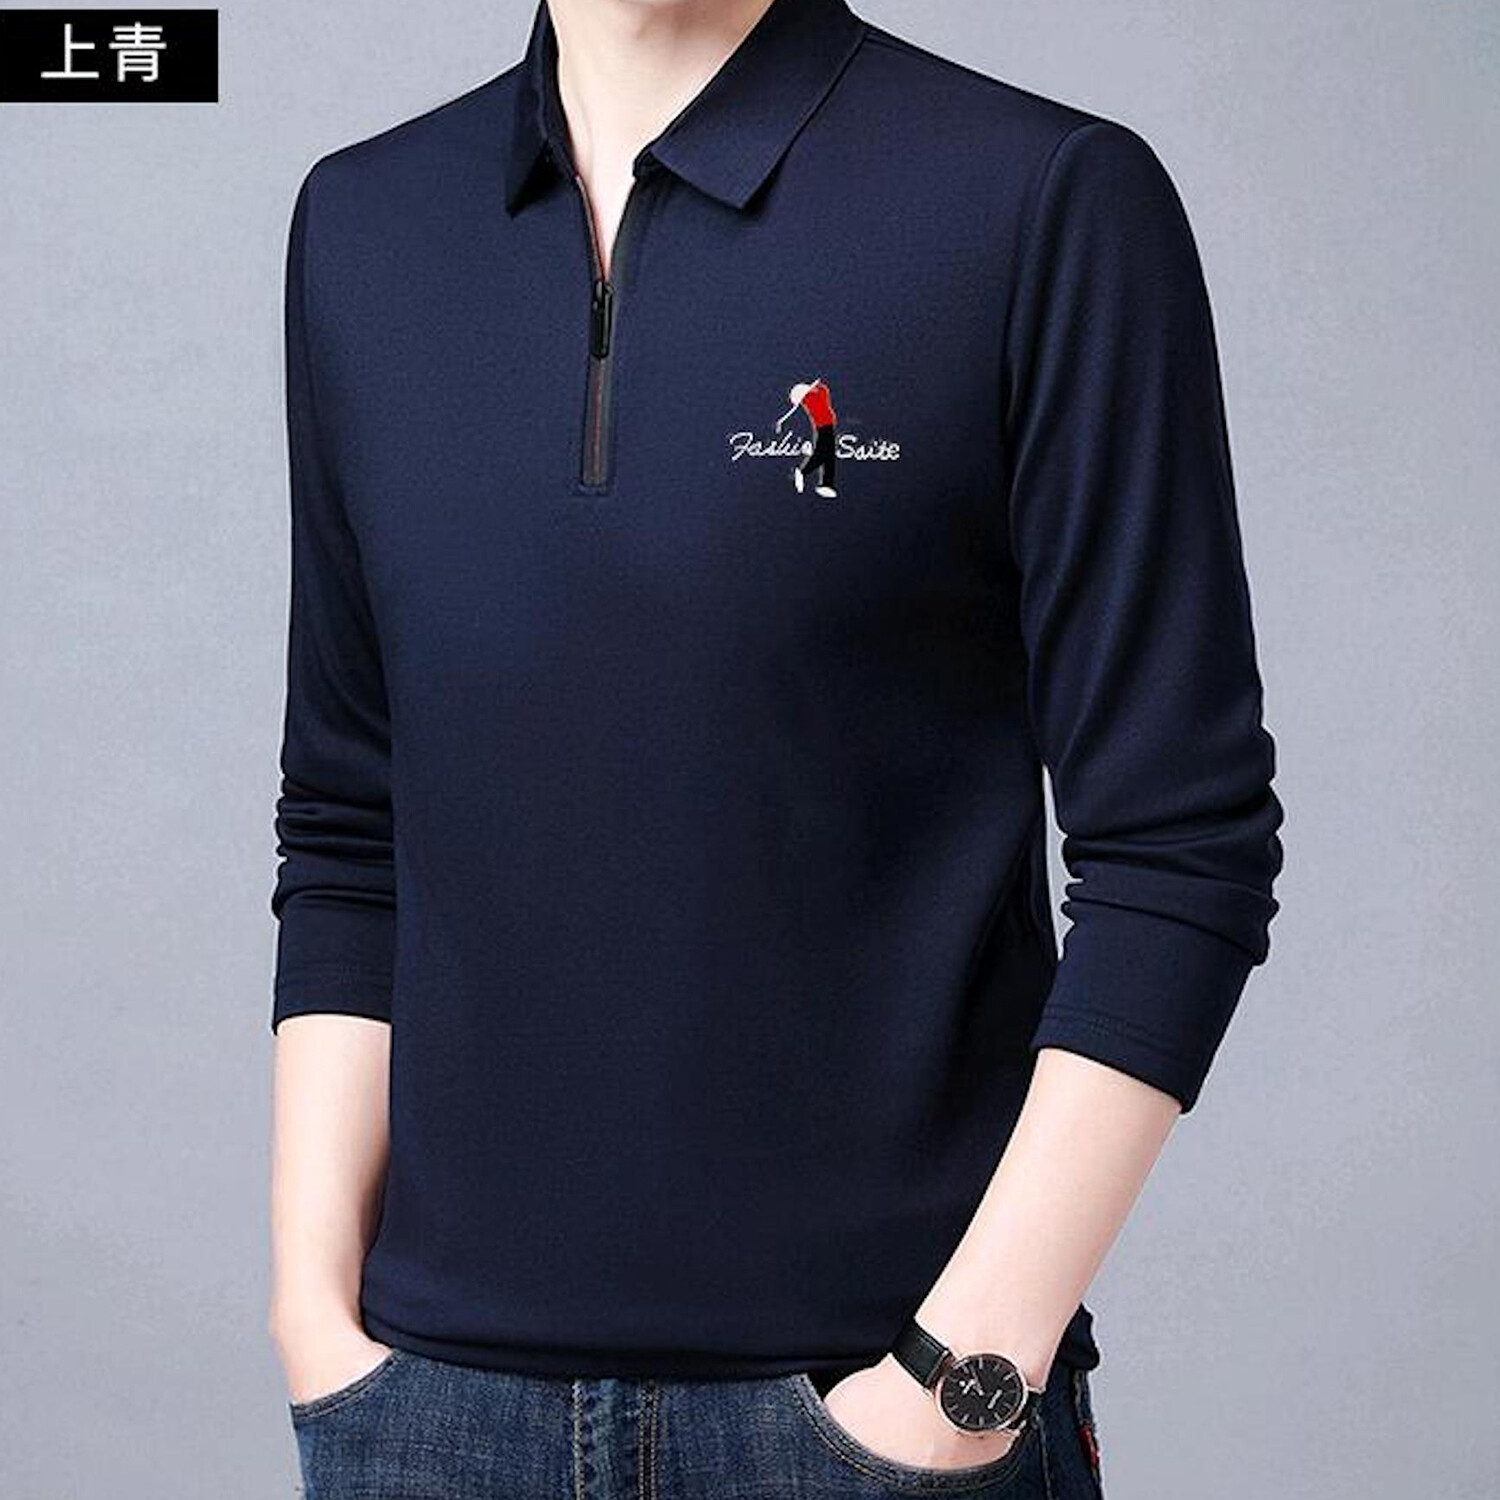 Golf Polo Long Sleeve Shirt // Zipper closure // Navy Blue (XS ...